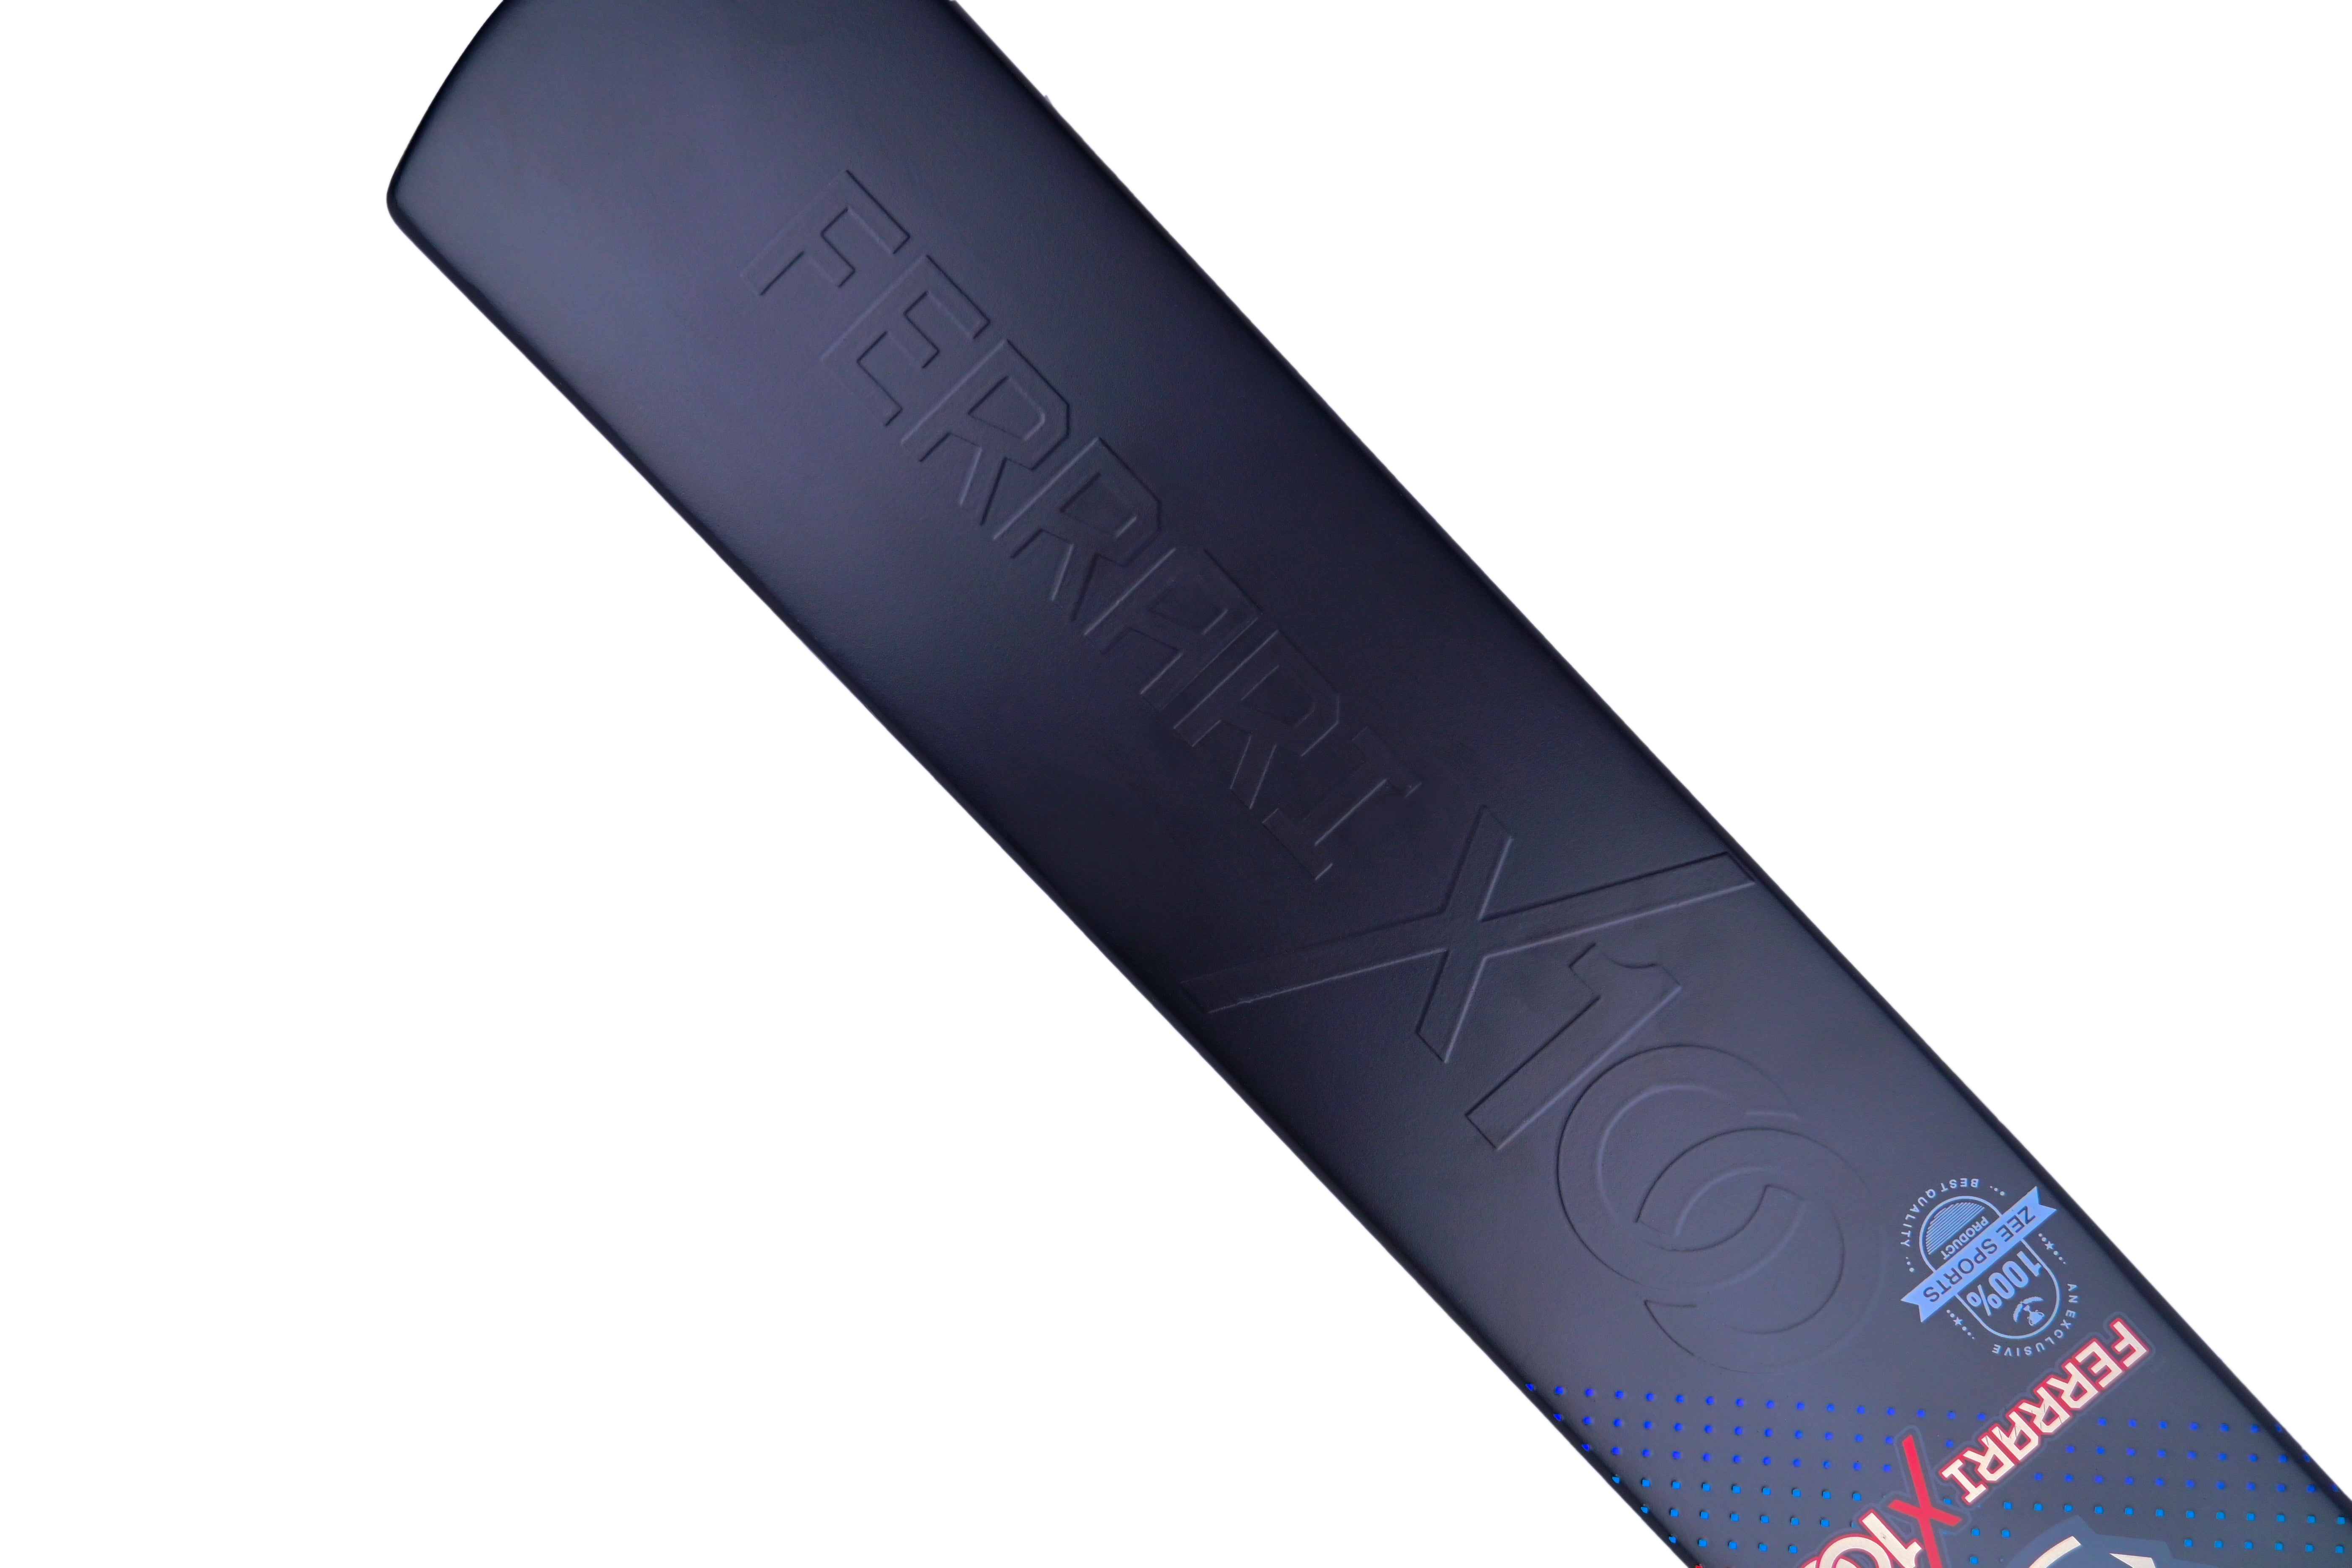 Matador Fiberglass Tape Tennis Cricket Bat Ferrari X100 | SH